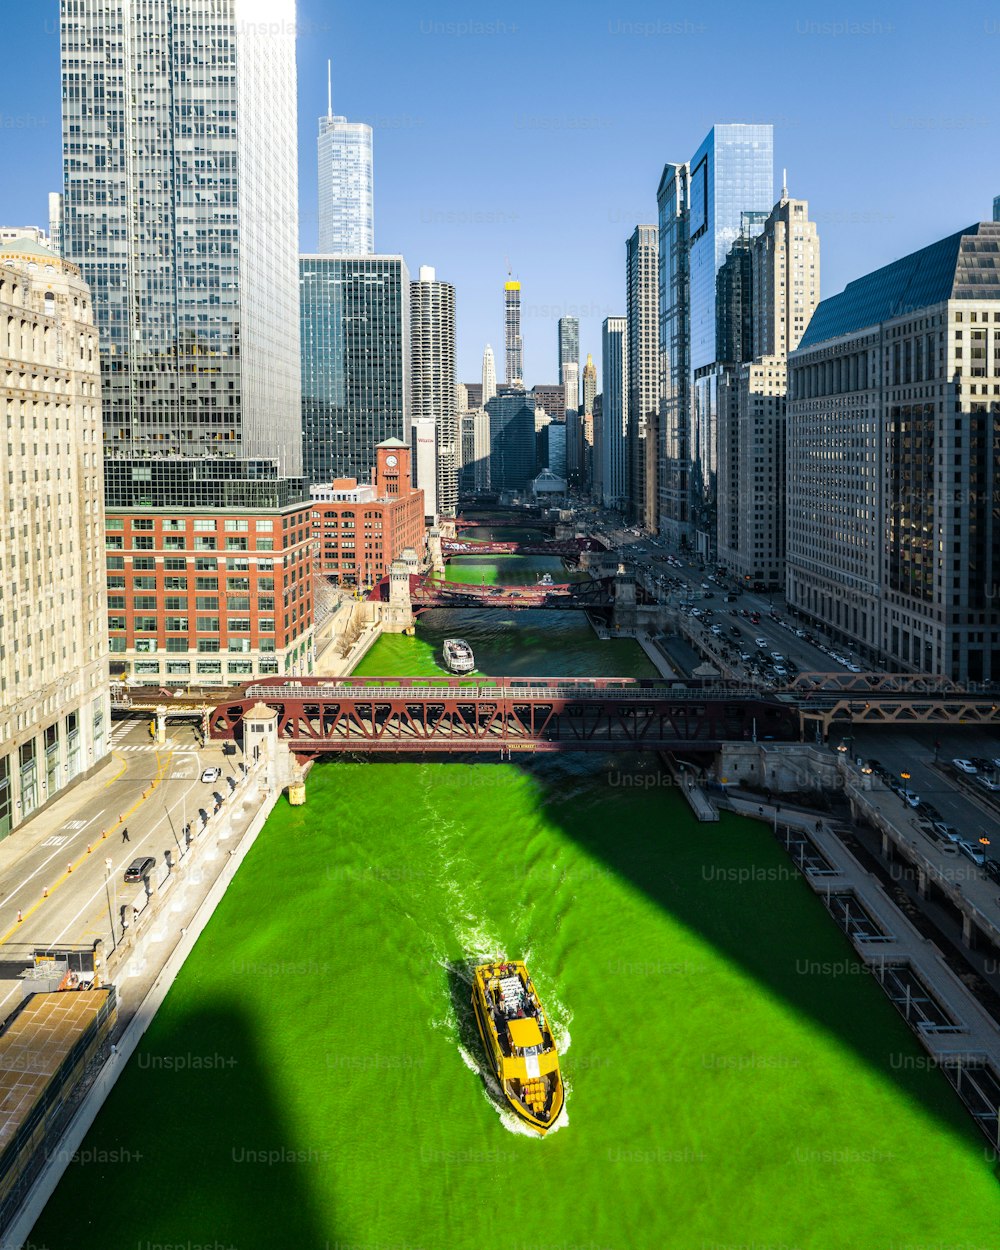 La bella veduta aerea del fiume verde di Chicago con una barca gialla